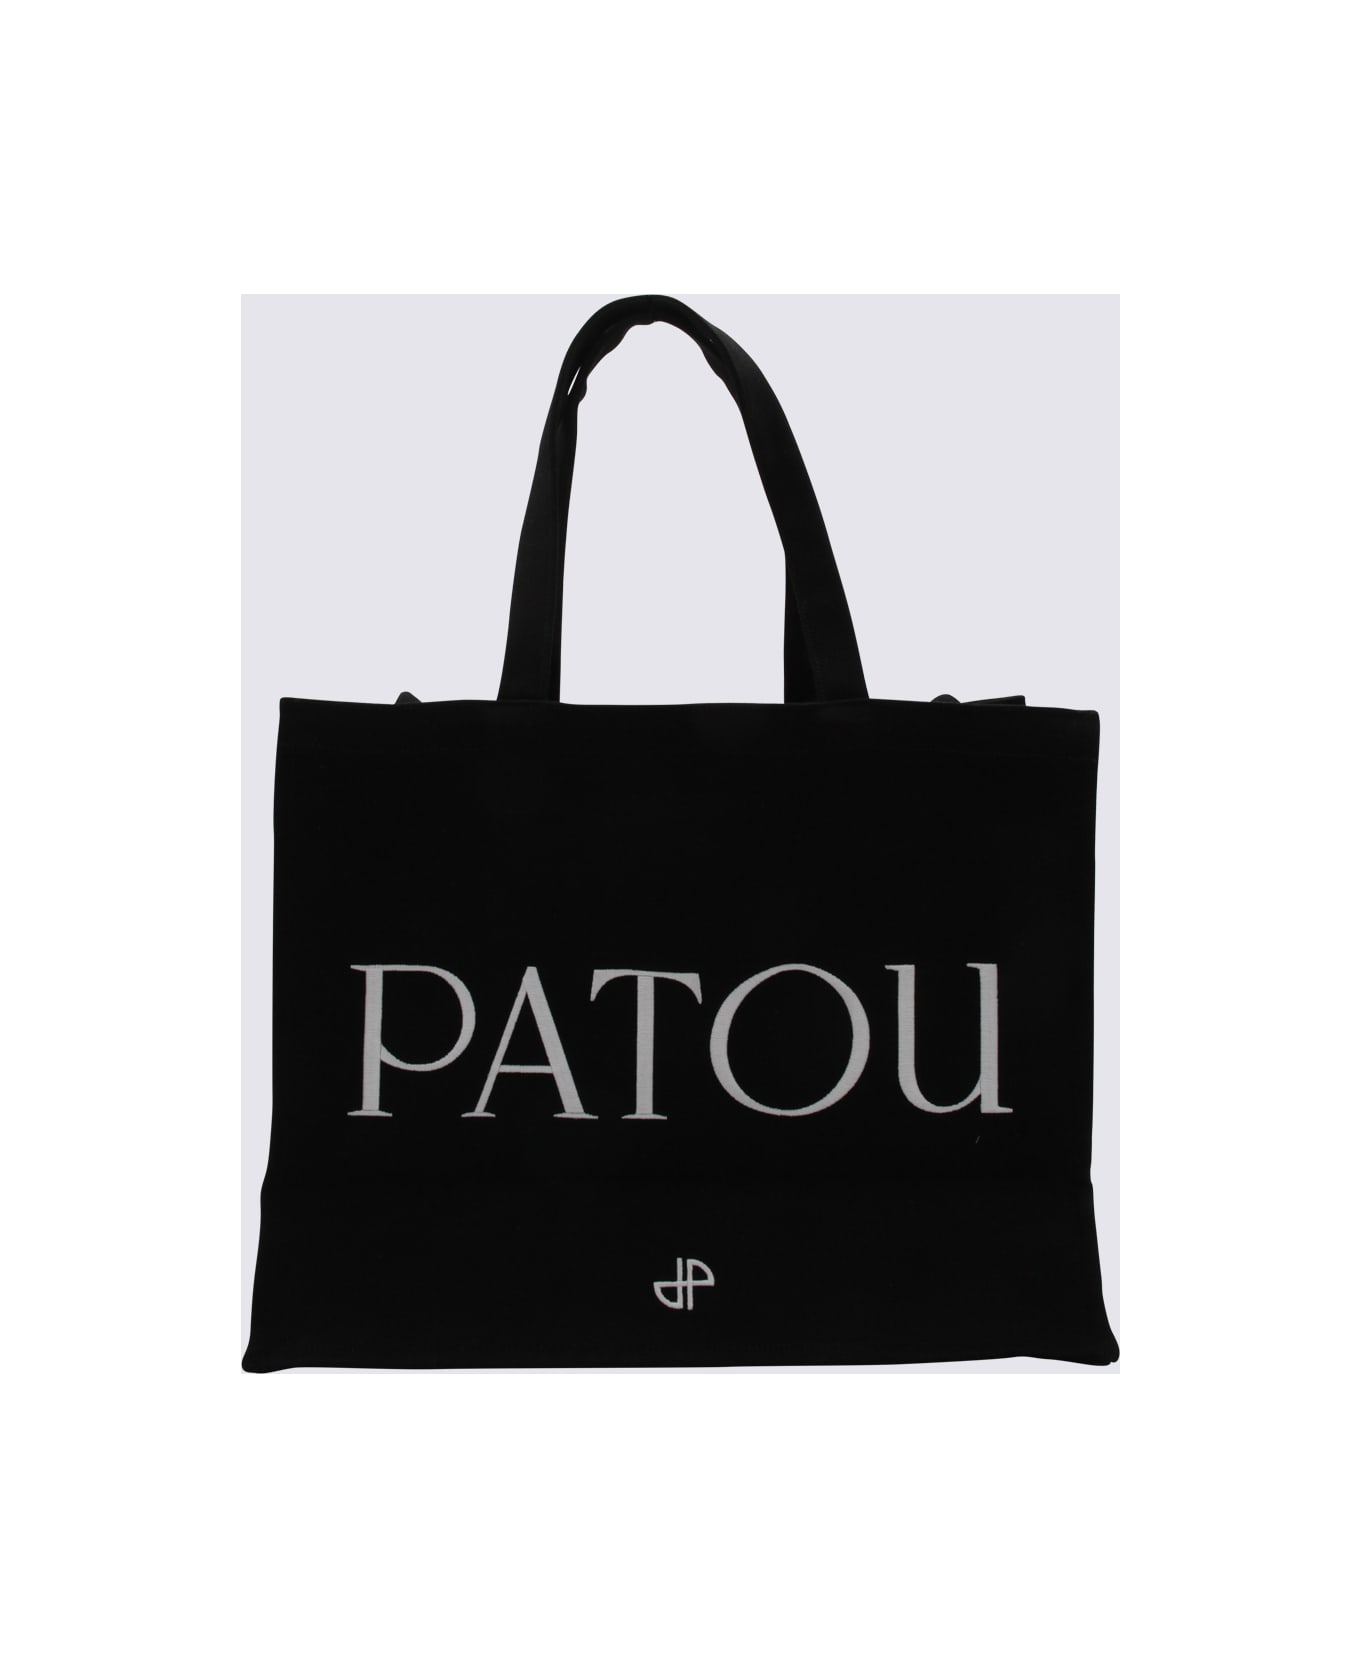 Patou Black Cotton Tote Bag - Black